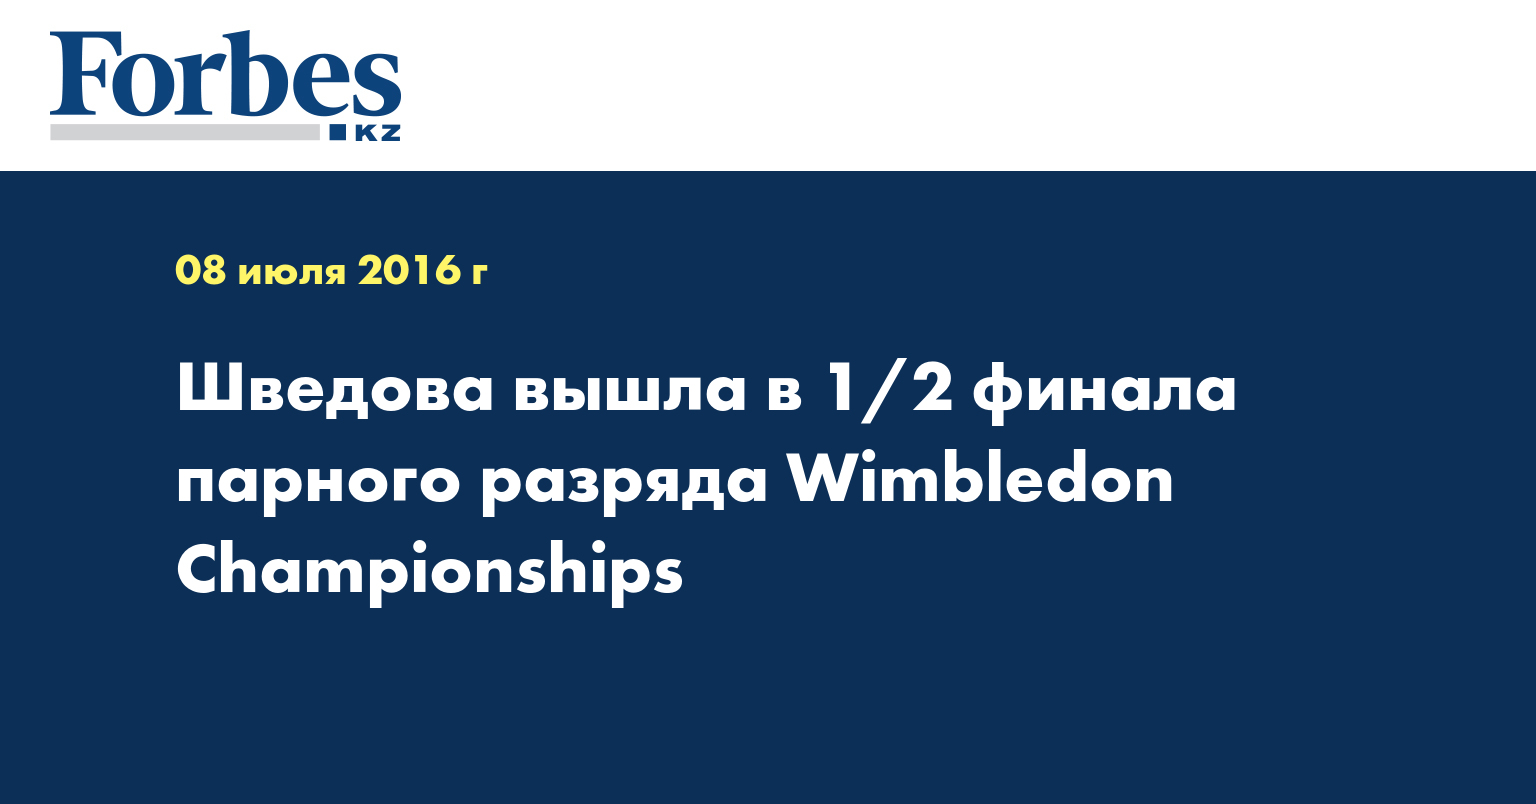 Шведова вышла в 1/2 финала парного разряда Wimbledon Championships